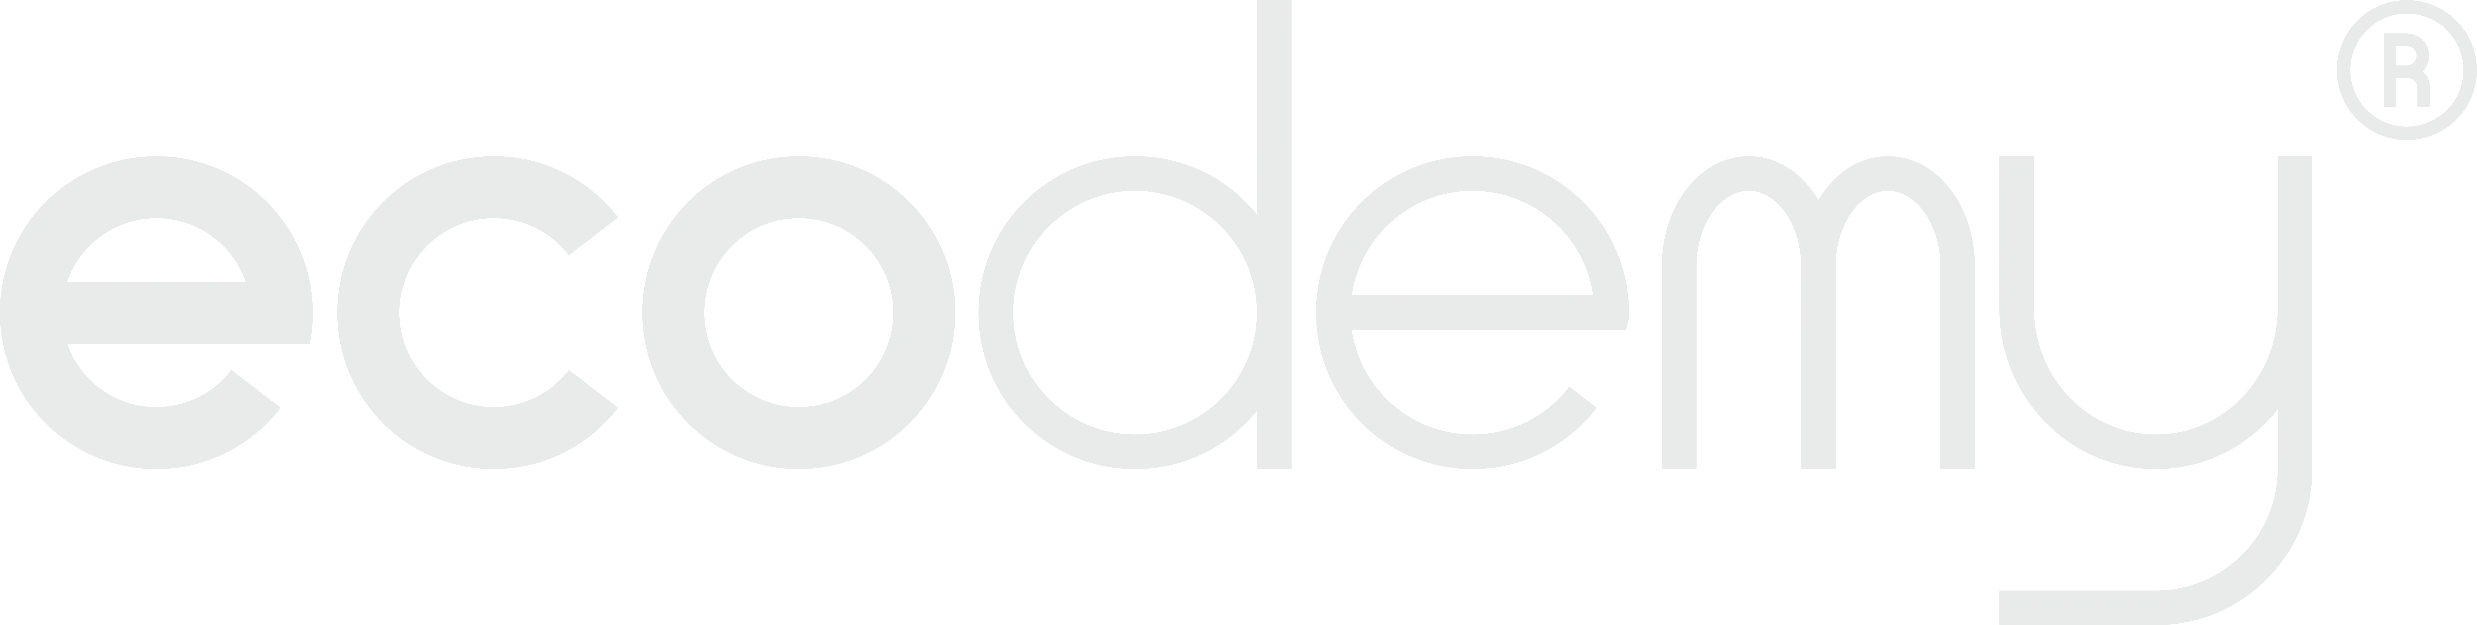 kcalculator ecodemy logo